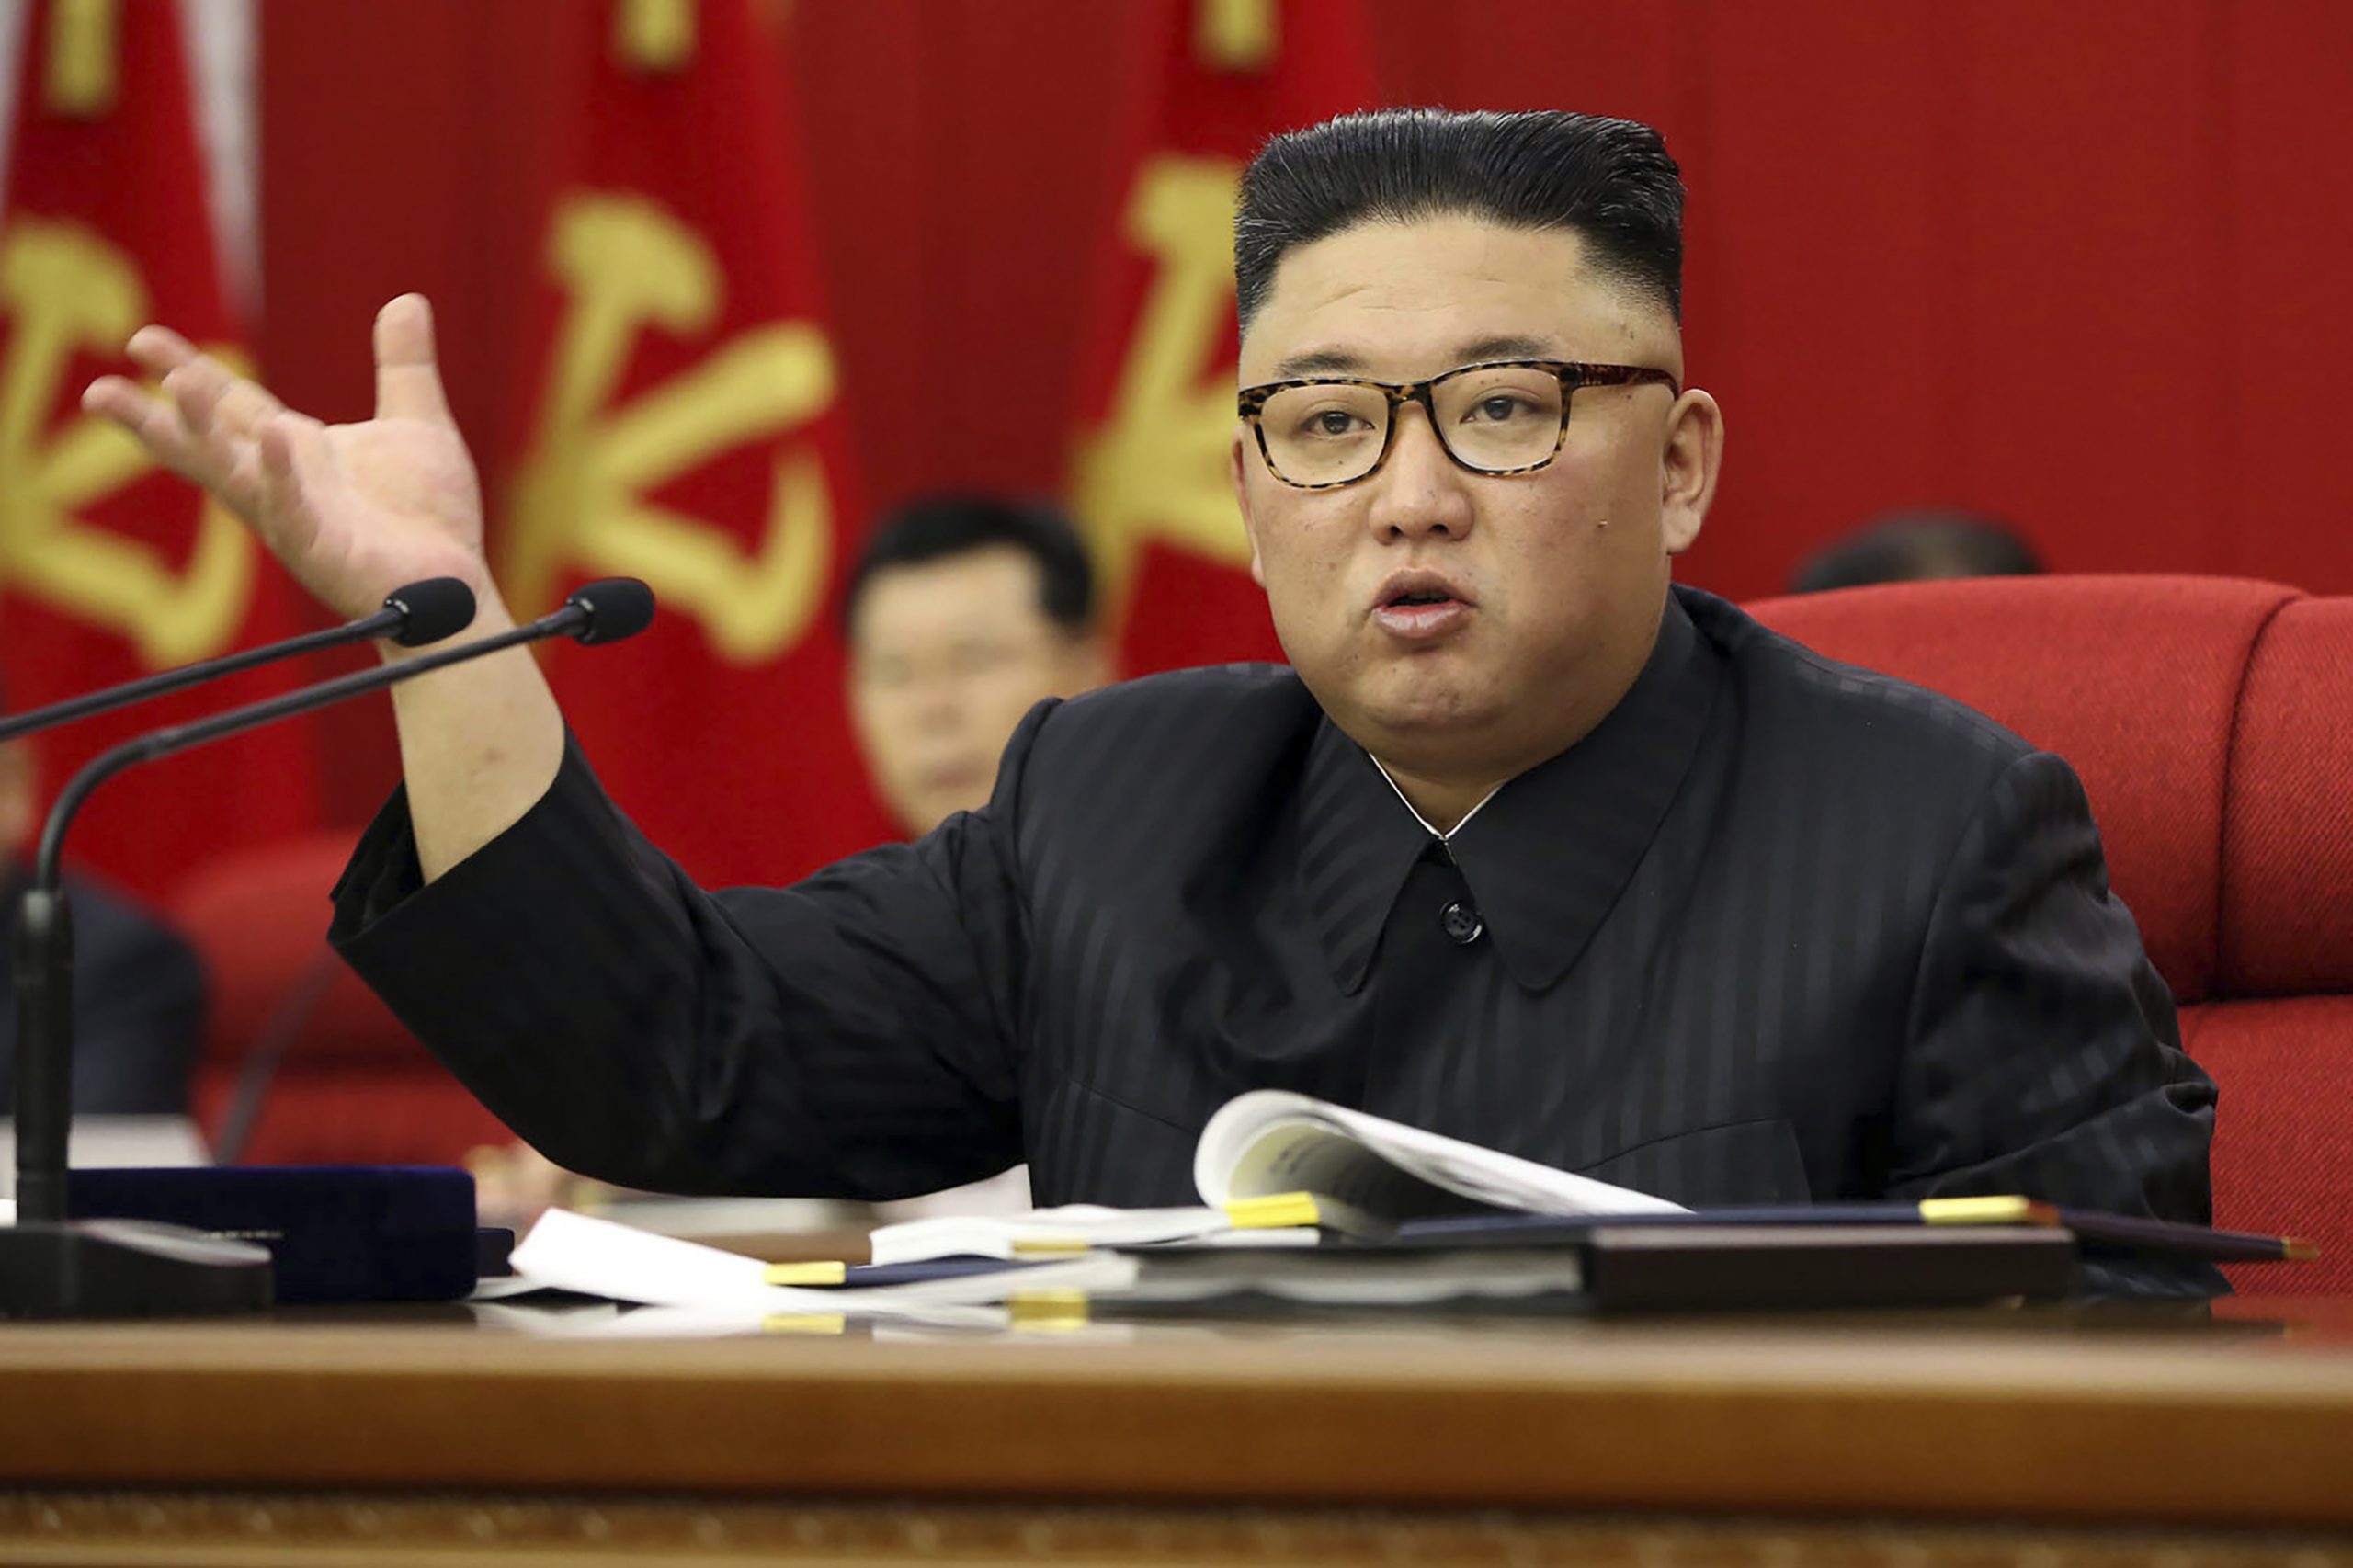 Kim Jong Un spricht auf einer Versammlung seiner Arbeiterpartei.